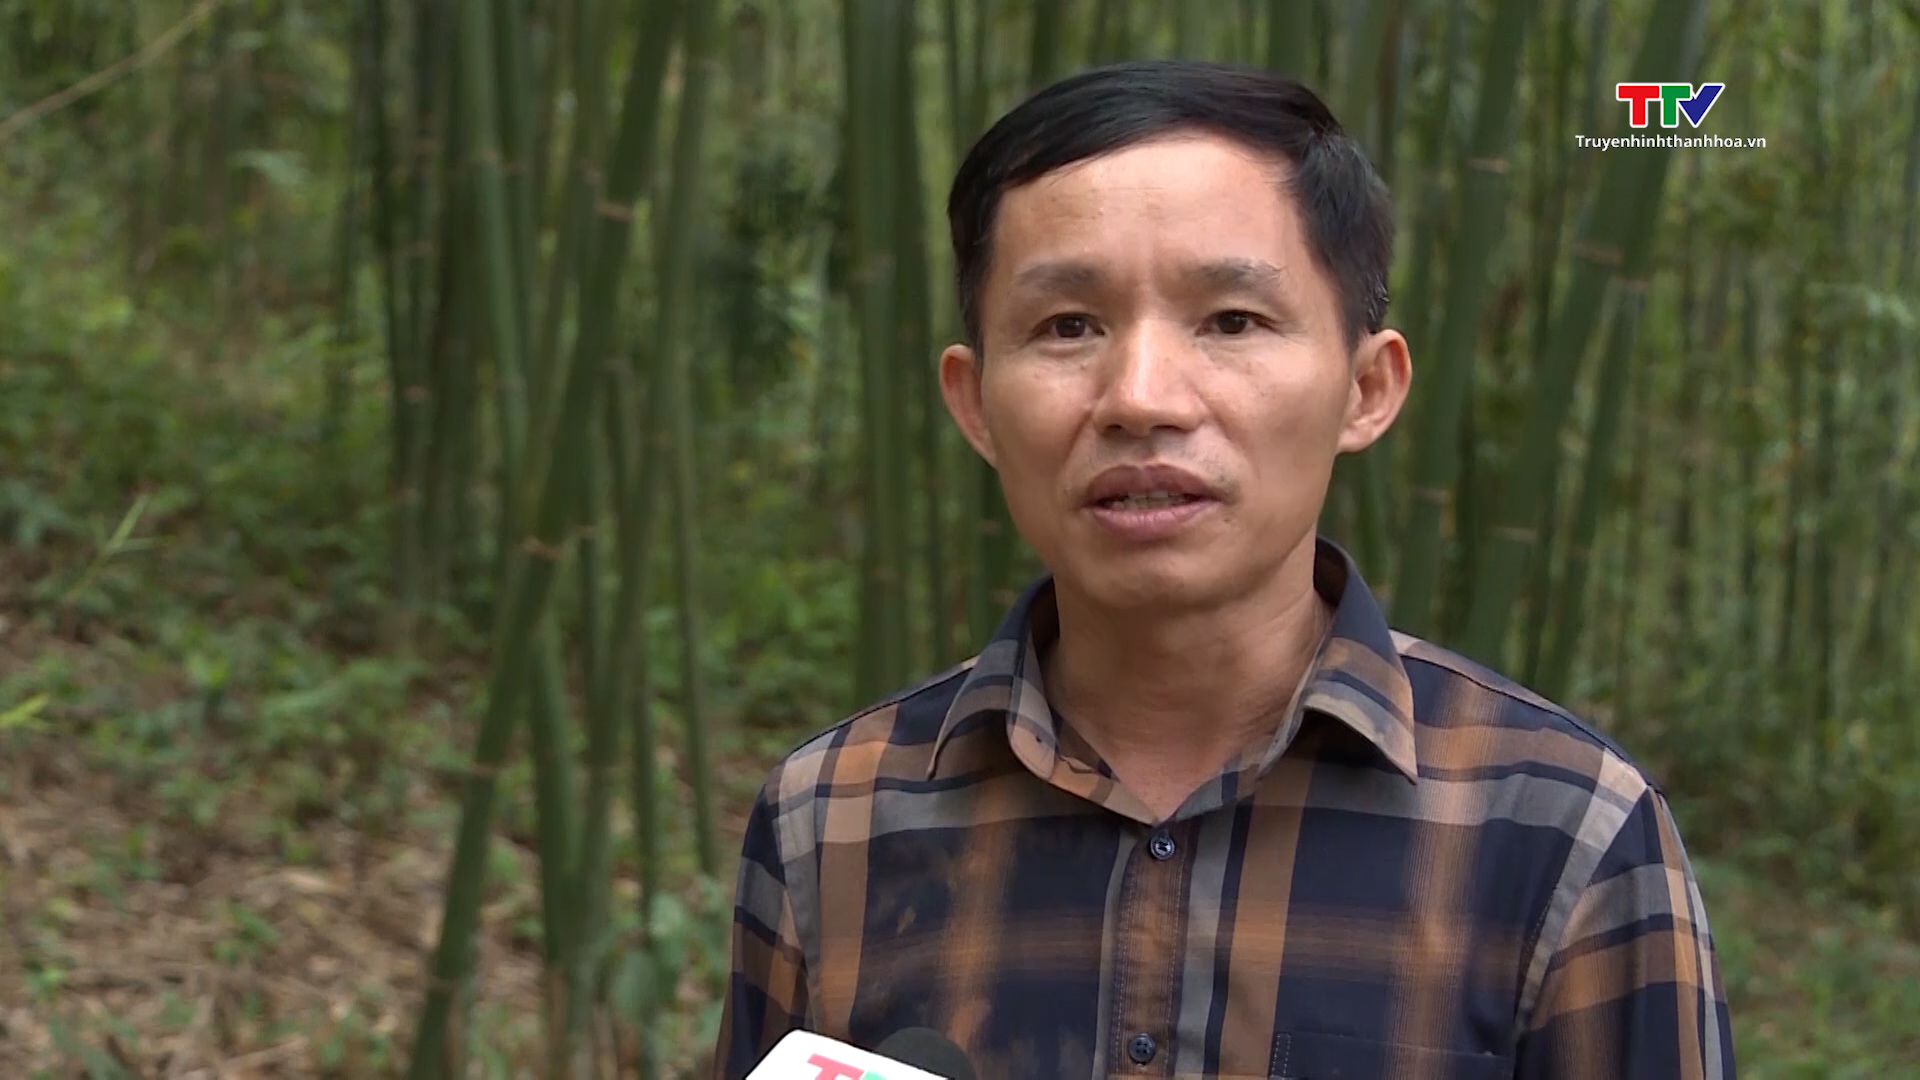 Tăng cường công tác tuyên truyền pháp luật về bảo vệ rừng ở miền núi Thanh Hóa - Ảnh 3.